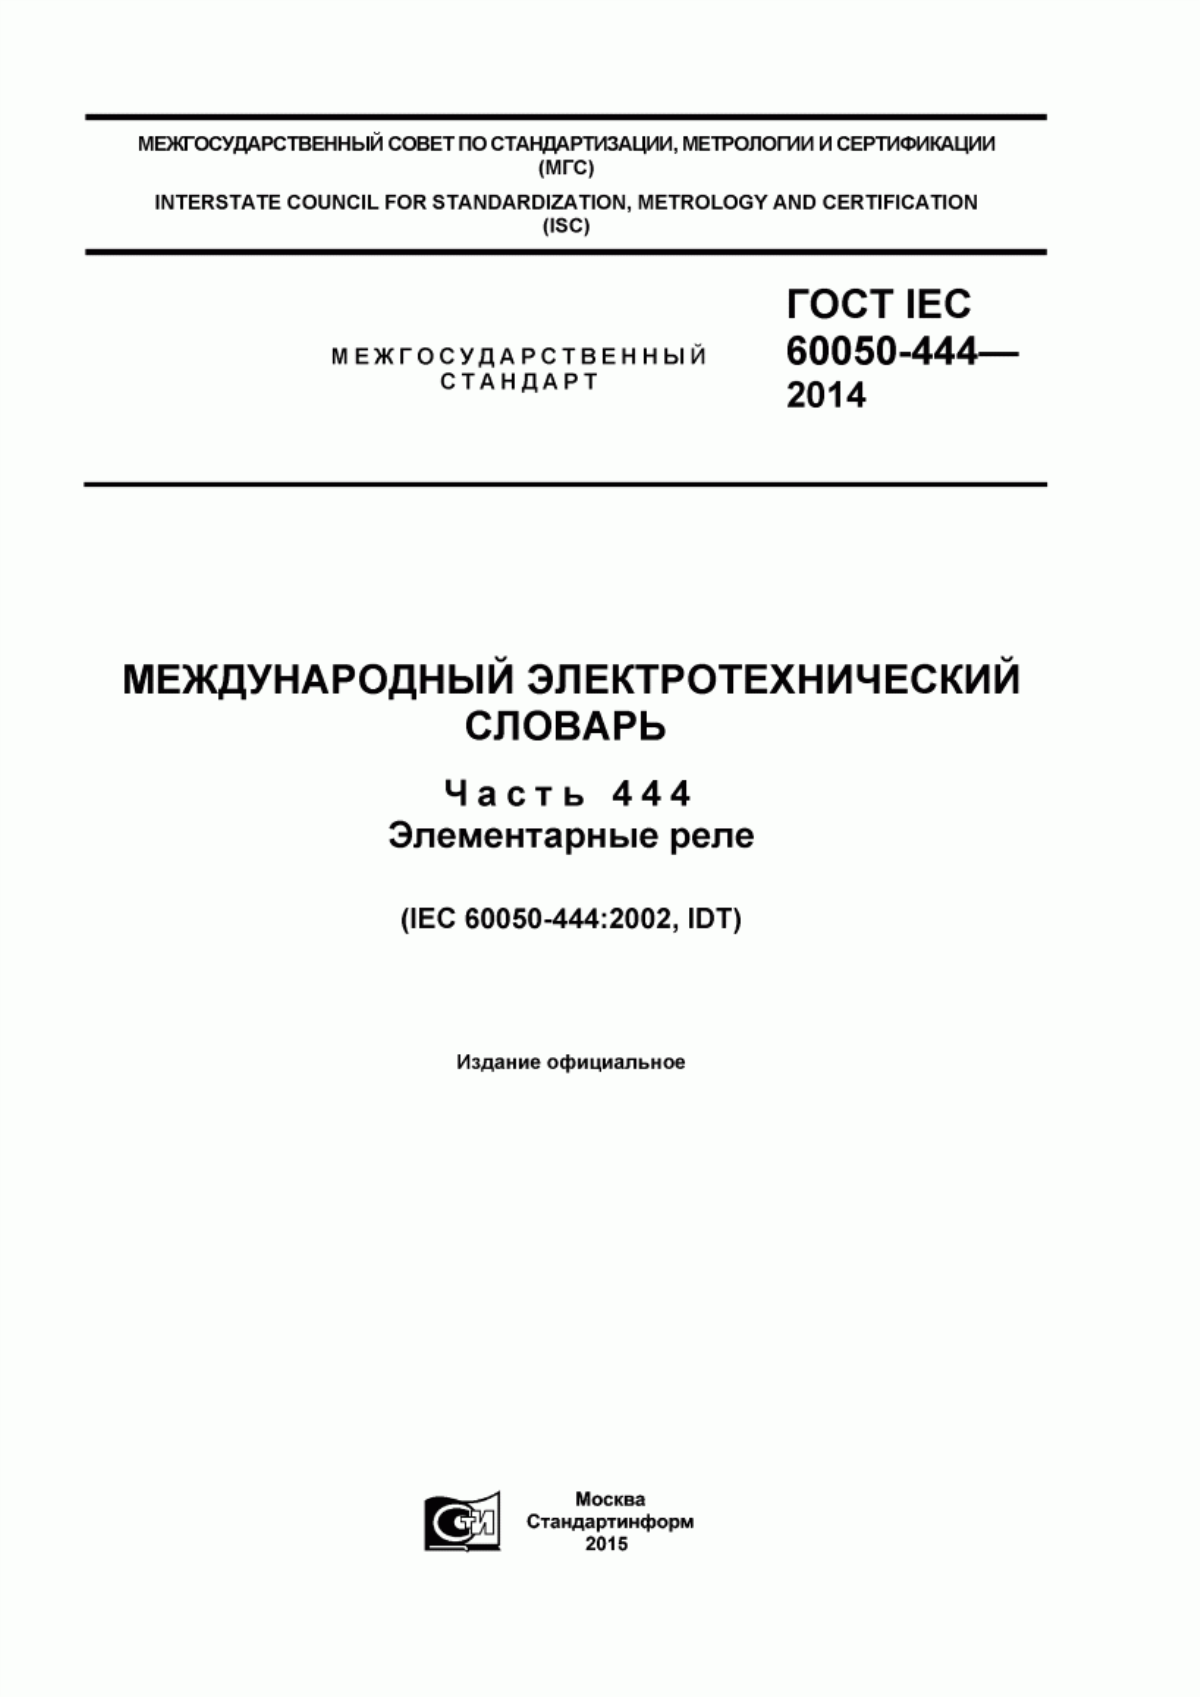 ГОСТ IEC 60050-444-2014 Международный электротехнический словарь. Часть 444. Элементарные реле